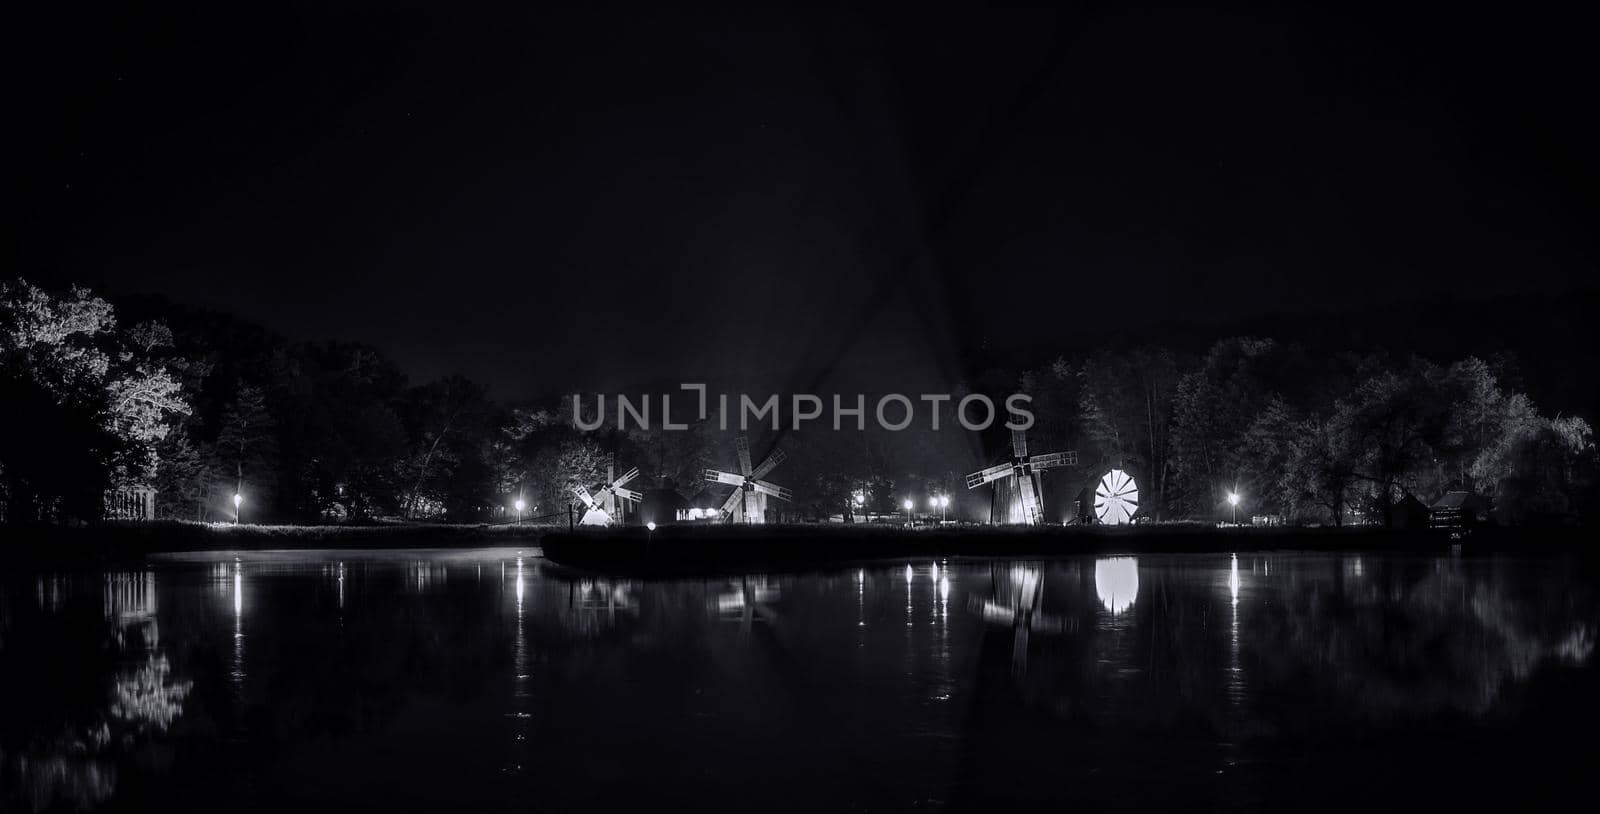 Windmills on lake by night